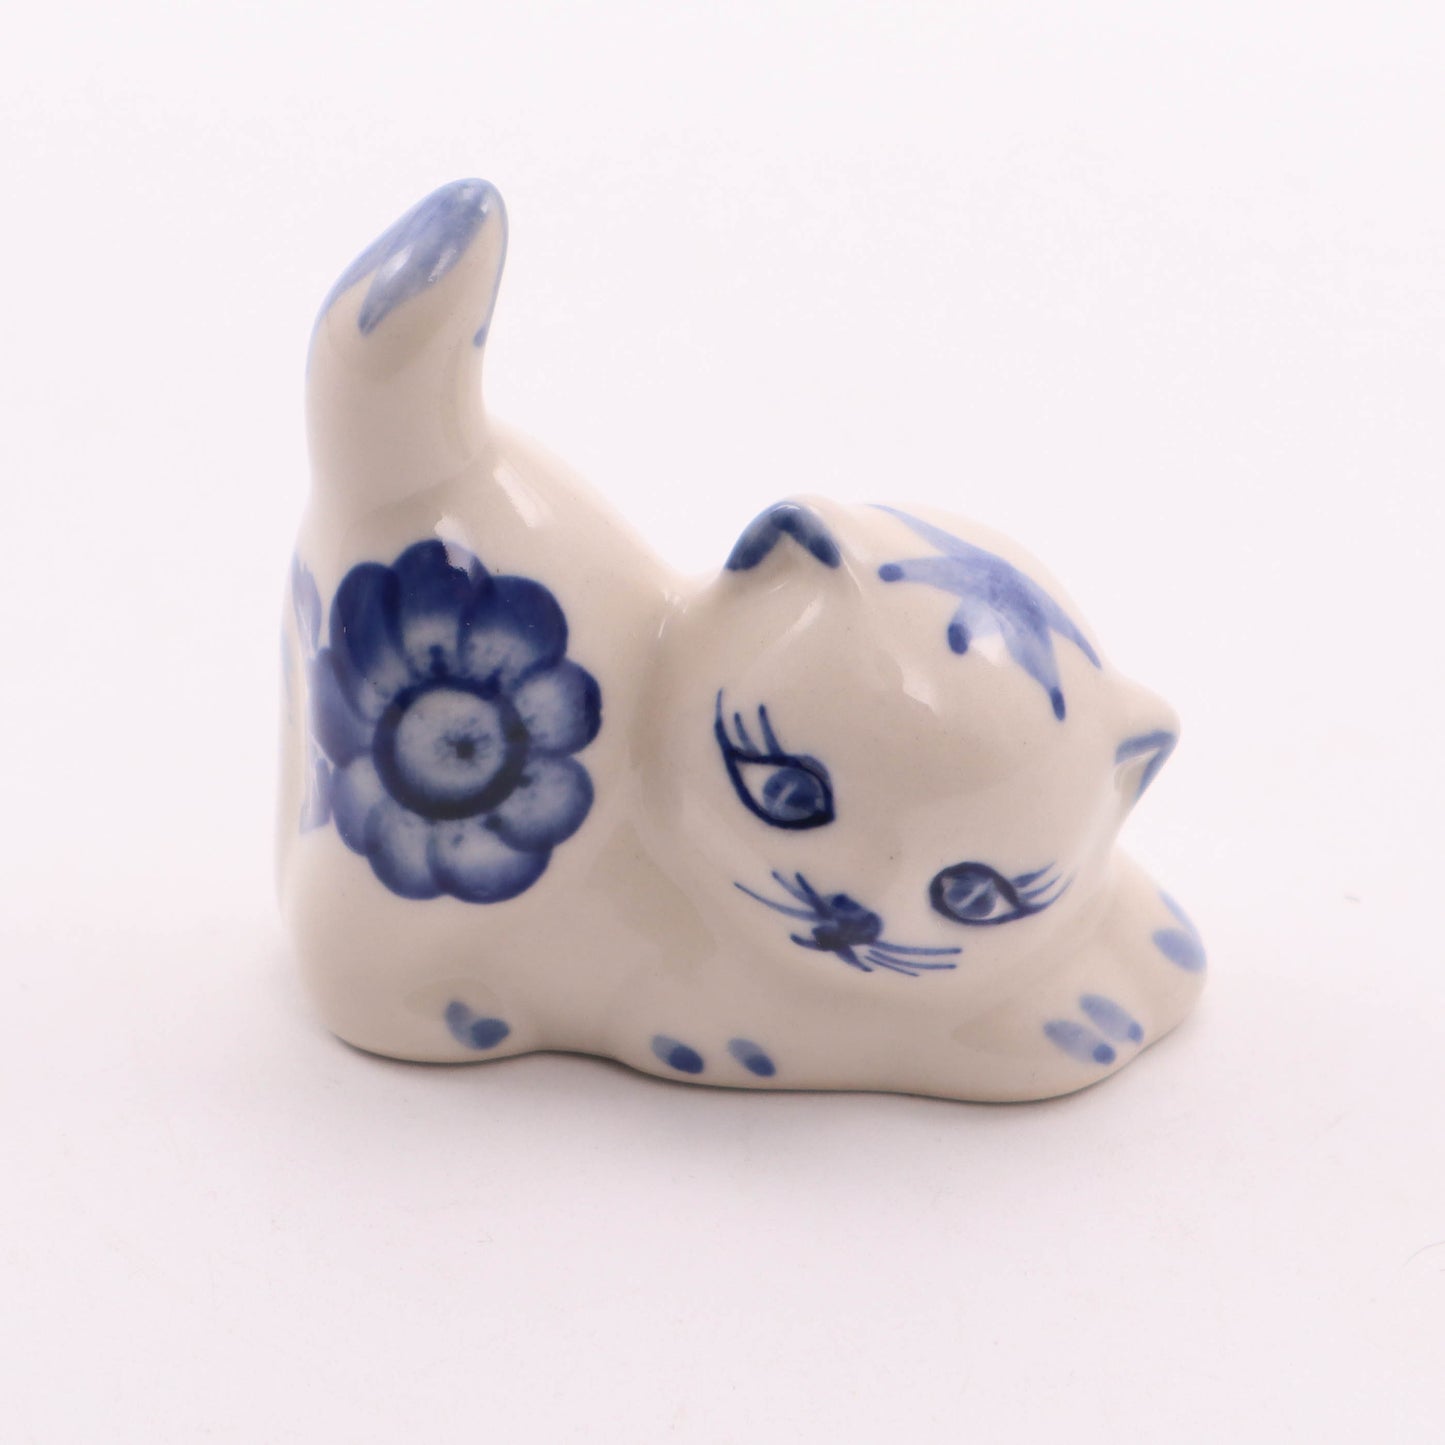 2"x2" Lying Cat Figurine. Pattern: Blue Flower